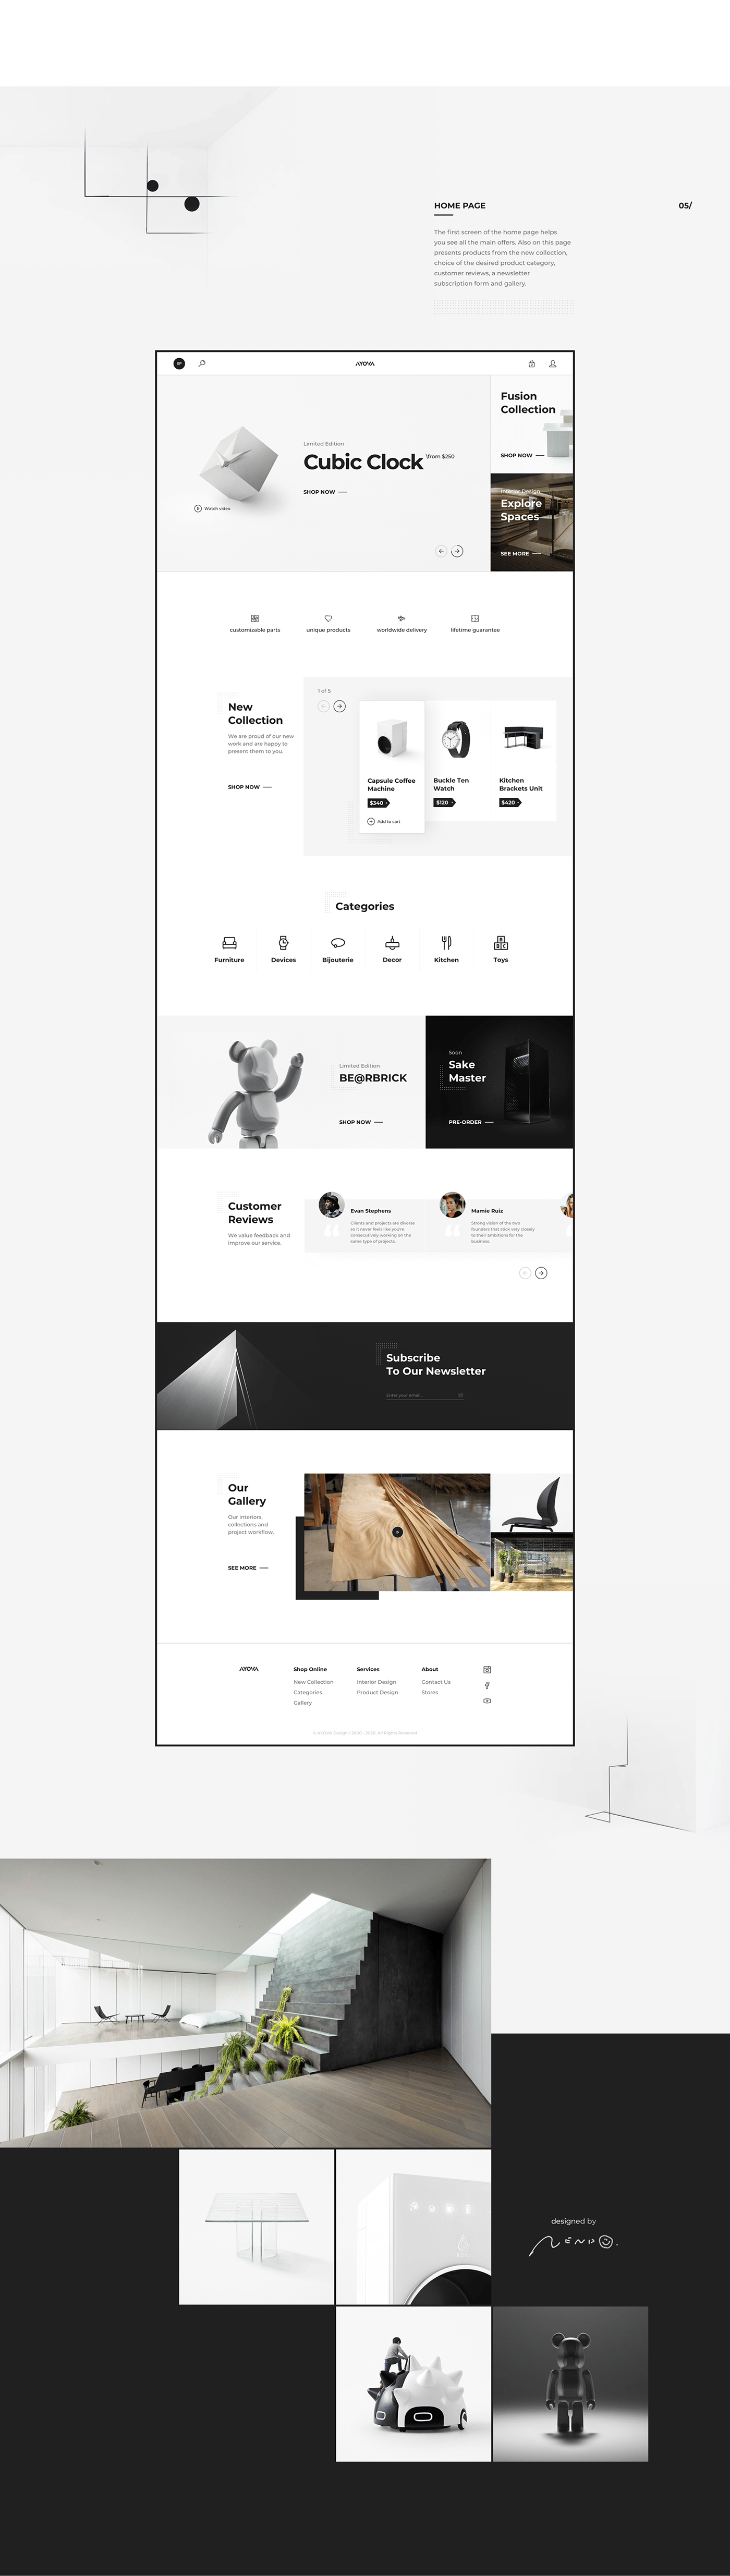 black and white e-commerce interactive interior design  nendo product design  shop typography   UI ux